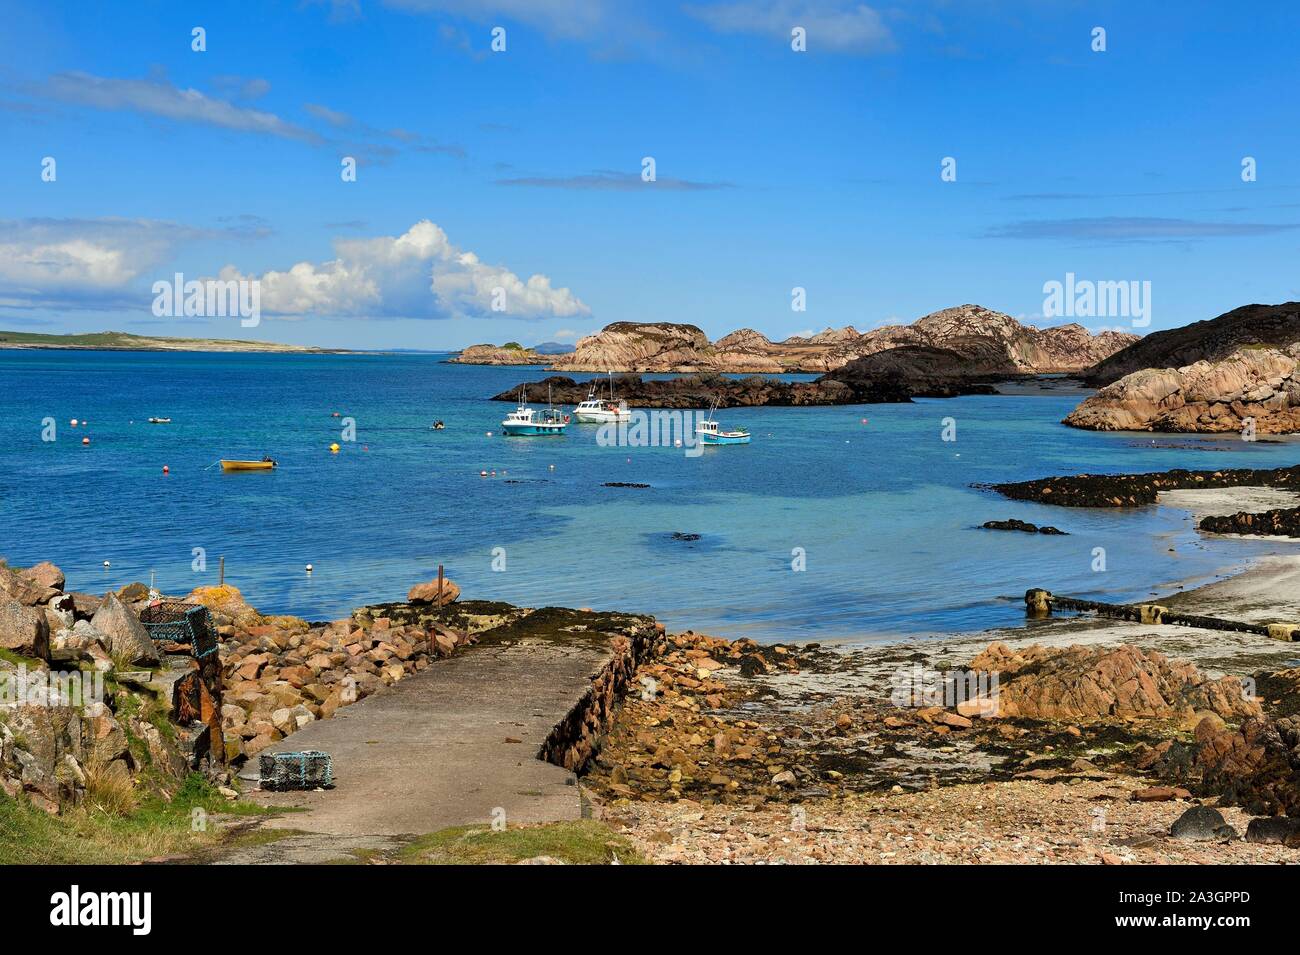 Vereinigtes Königreich, Schottland, Highland, Innere Hebriden, die Ross von Mull im äußersten Südwesten der Insel Mull, Iona Fionnphort mit Blick auf die Insel Stockfoto